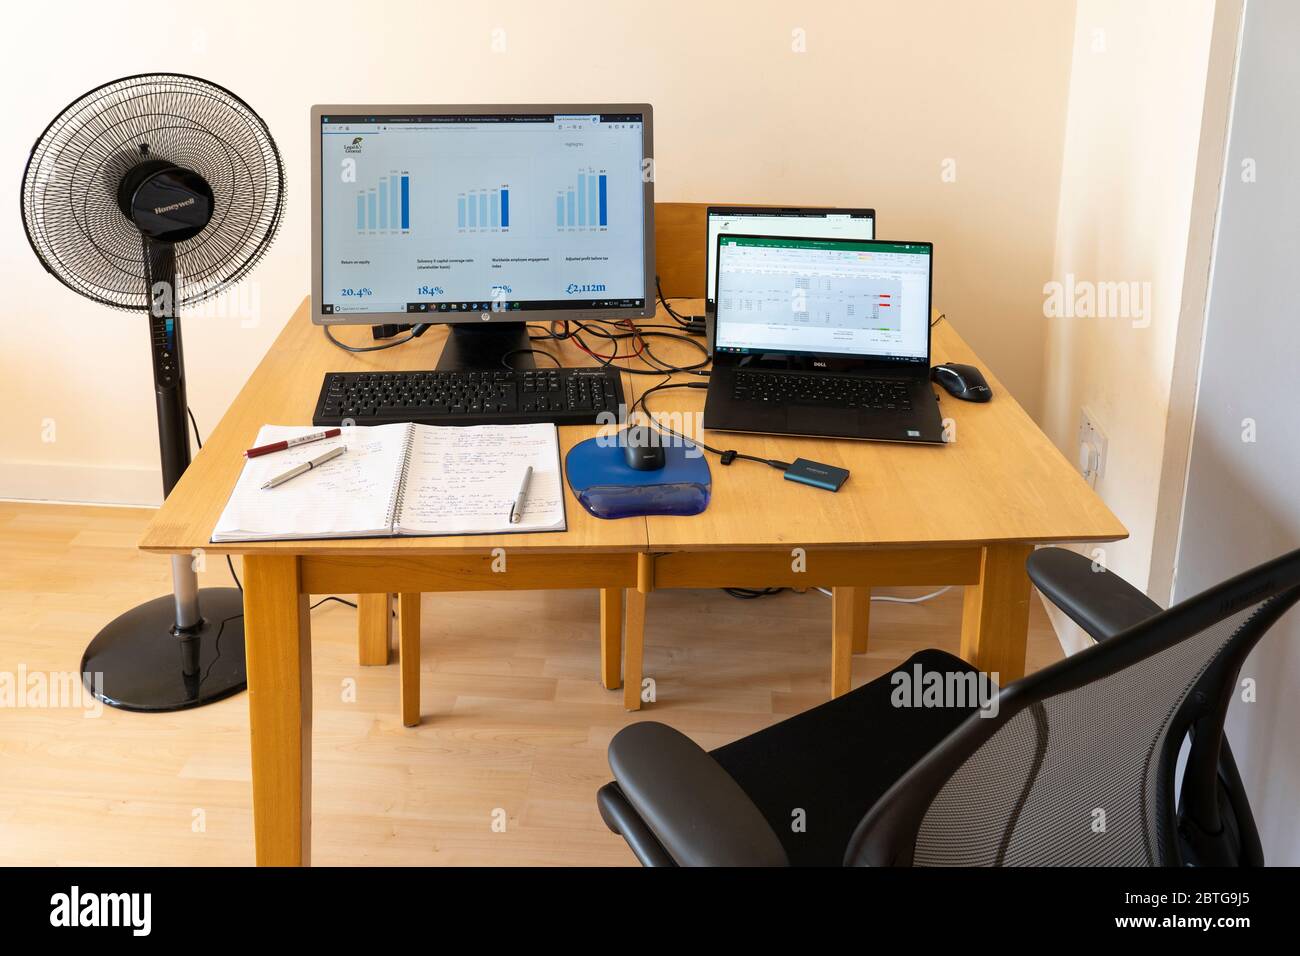 Ein Tisch mit Laptops und einem Monitor mit Maus und Maus-Matte, Notizblock und Stifte, ein Ventilator und Bildschirme mit Grafiken. Thema - Arbeiten von zu Hause aus. GROSSBRITANNIEN Stockfoto